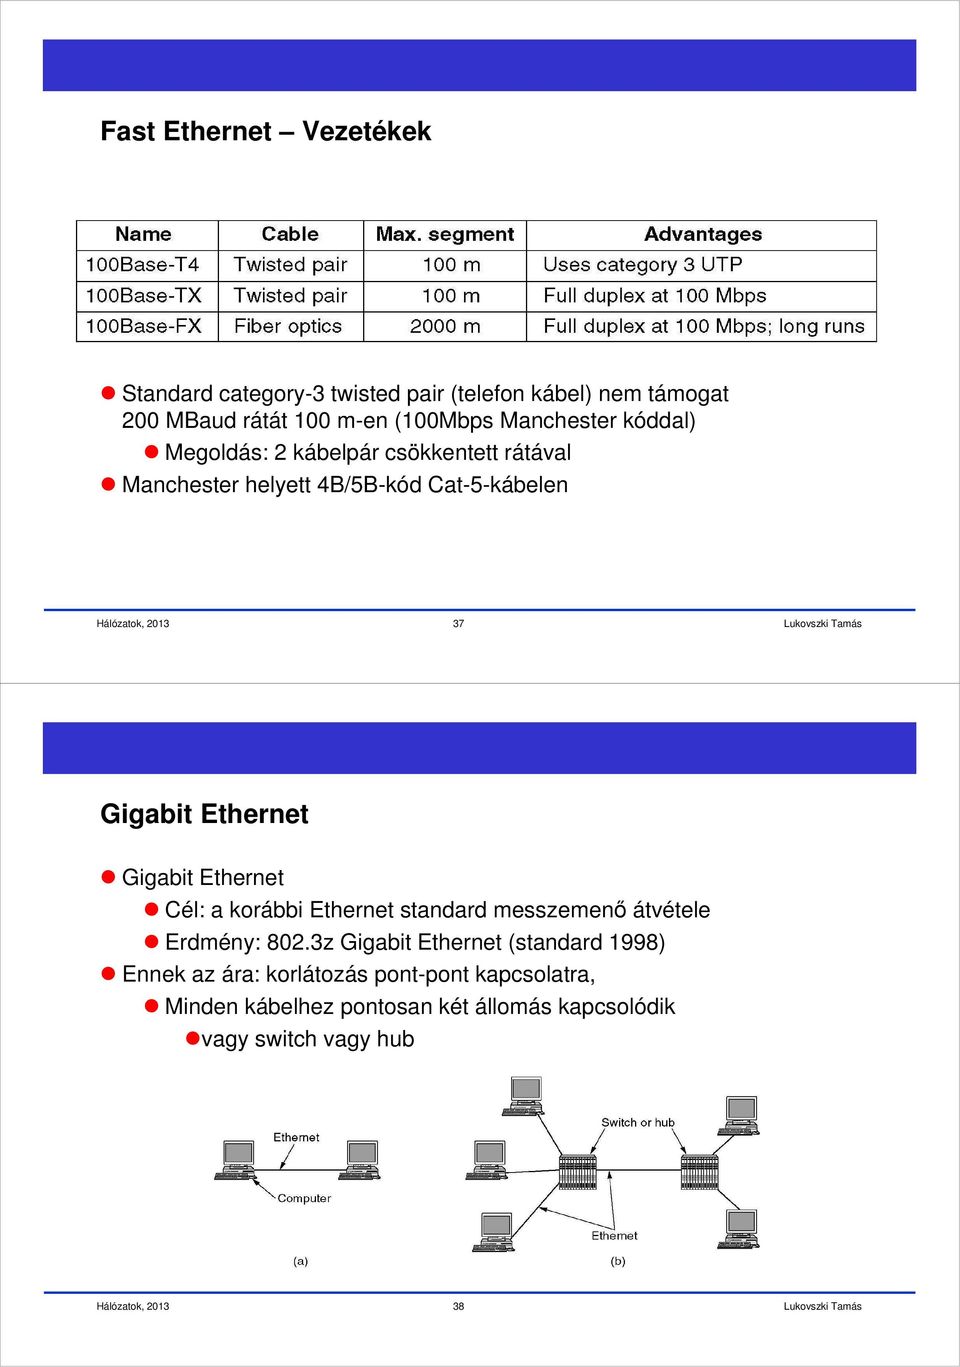 Ethernet Gigabit Ethernet Cél: a korábbi Ethernet standard messzemenő átvétele Erdmény: 802.